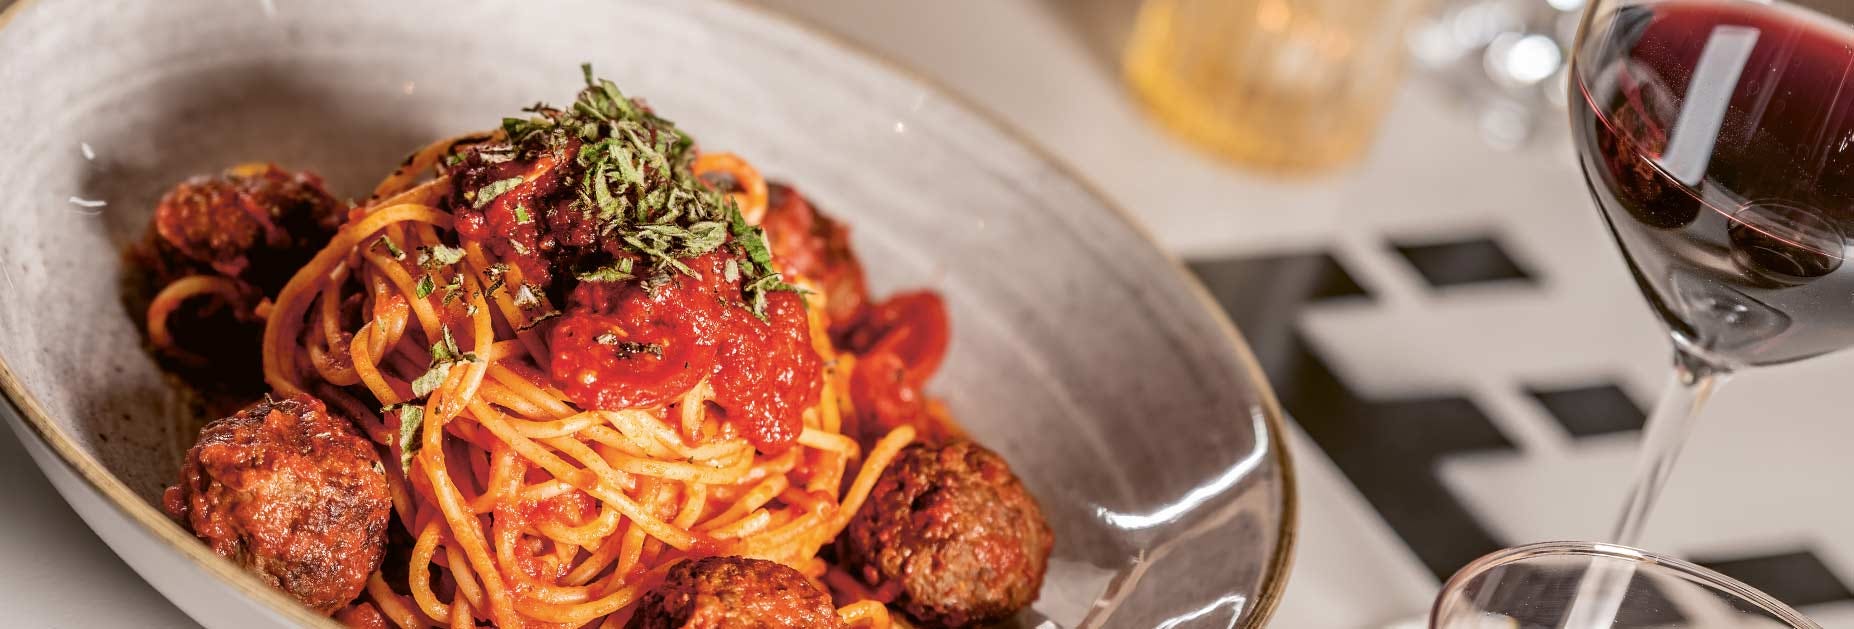 Spaghetti mit Meatballs und dazu einen Cum Laude